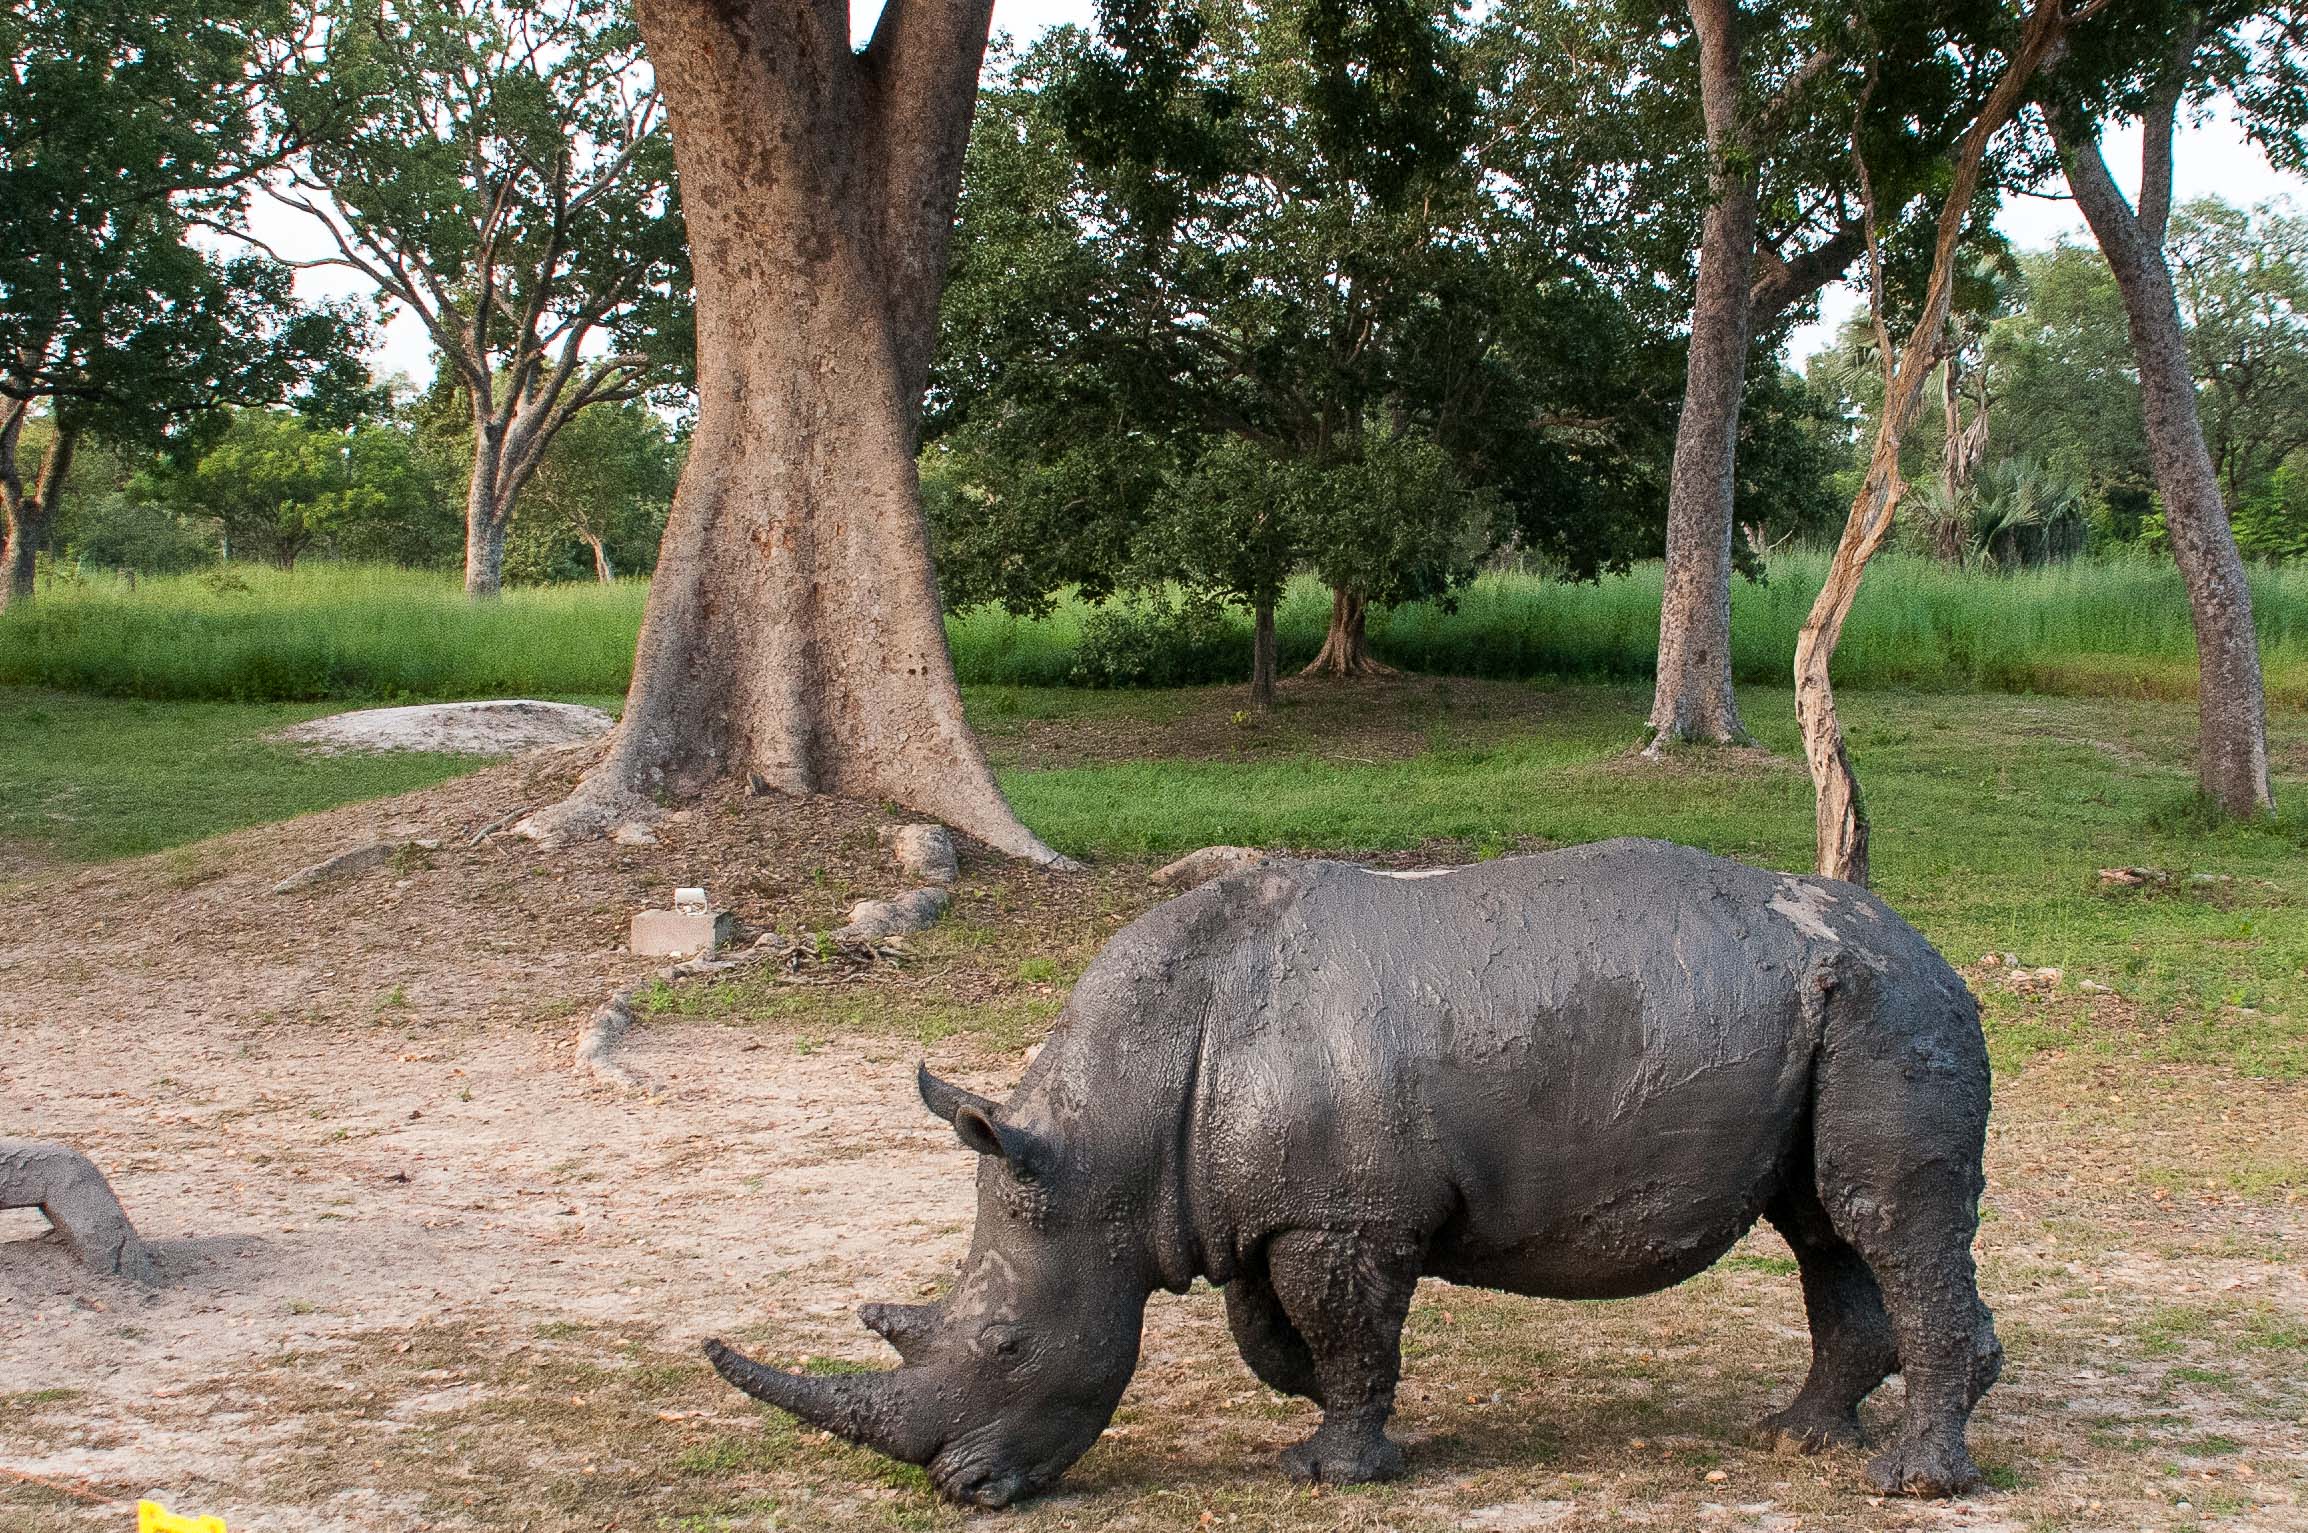 Rhinocéros blanc (White rhinoceros, Square-lipped rhinoceros, Ceratotherium simum), mâle après son bain de boue, Réserve de Fathala, Sénégal.